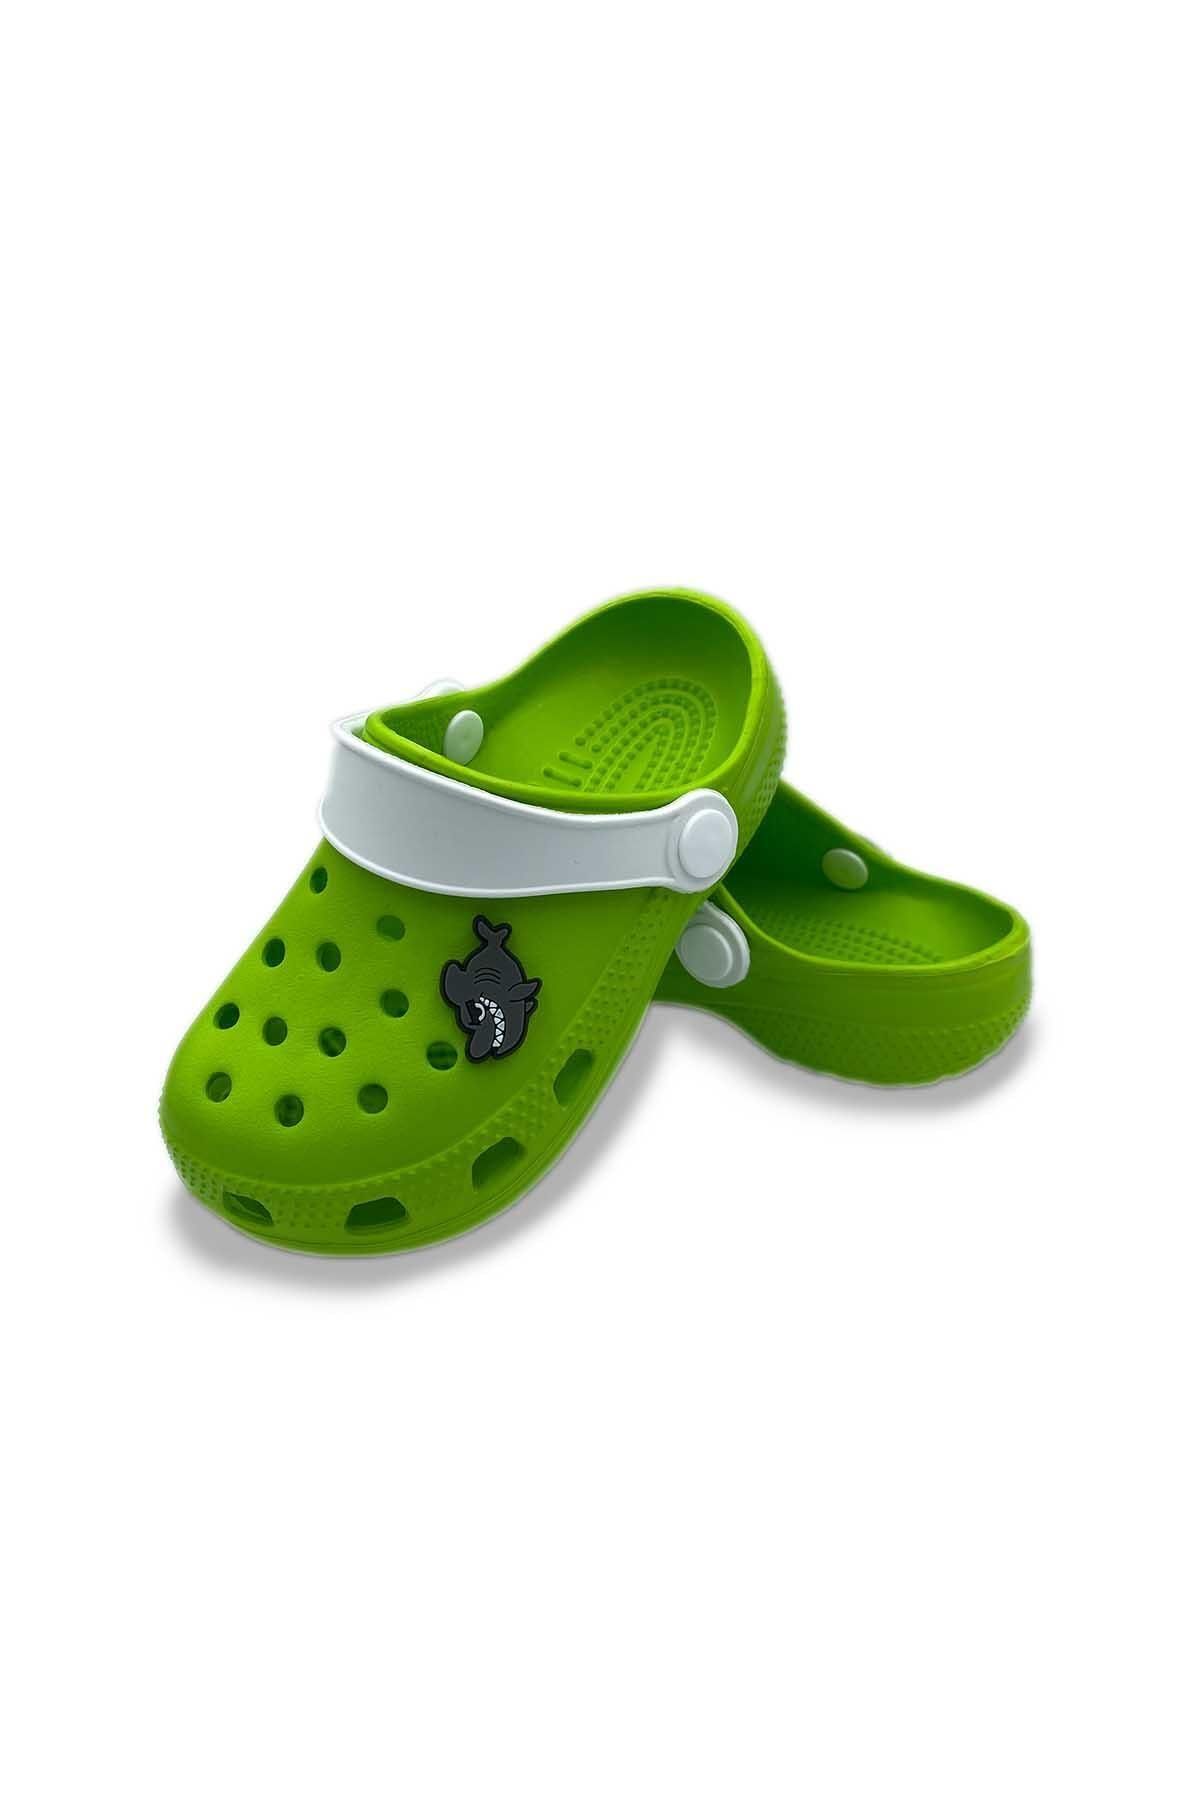 Akınal Bella Erkek Çocuk Yeşil Köpekbalığı Tasarımlı Crocs